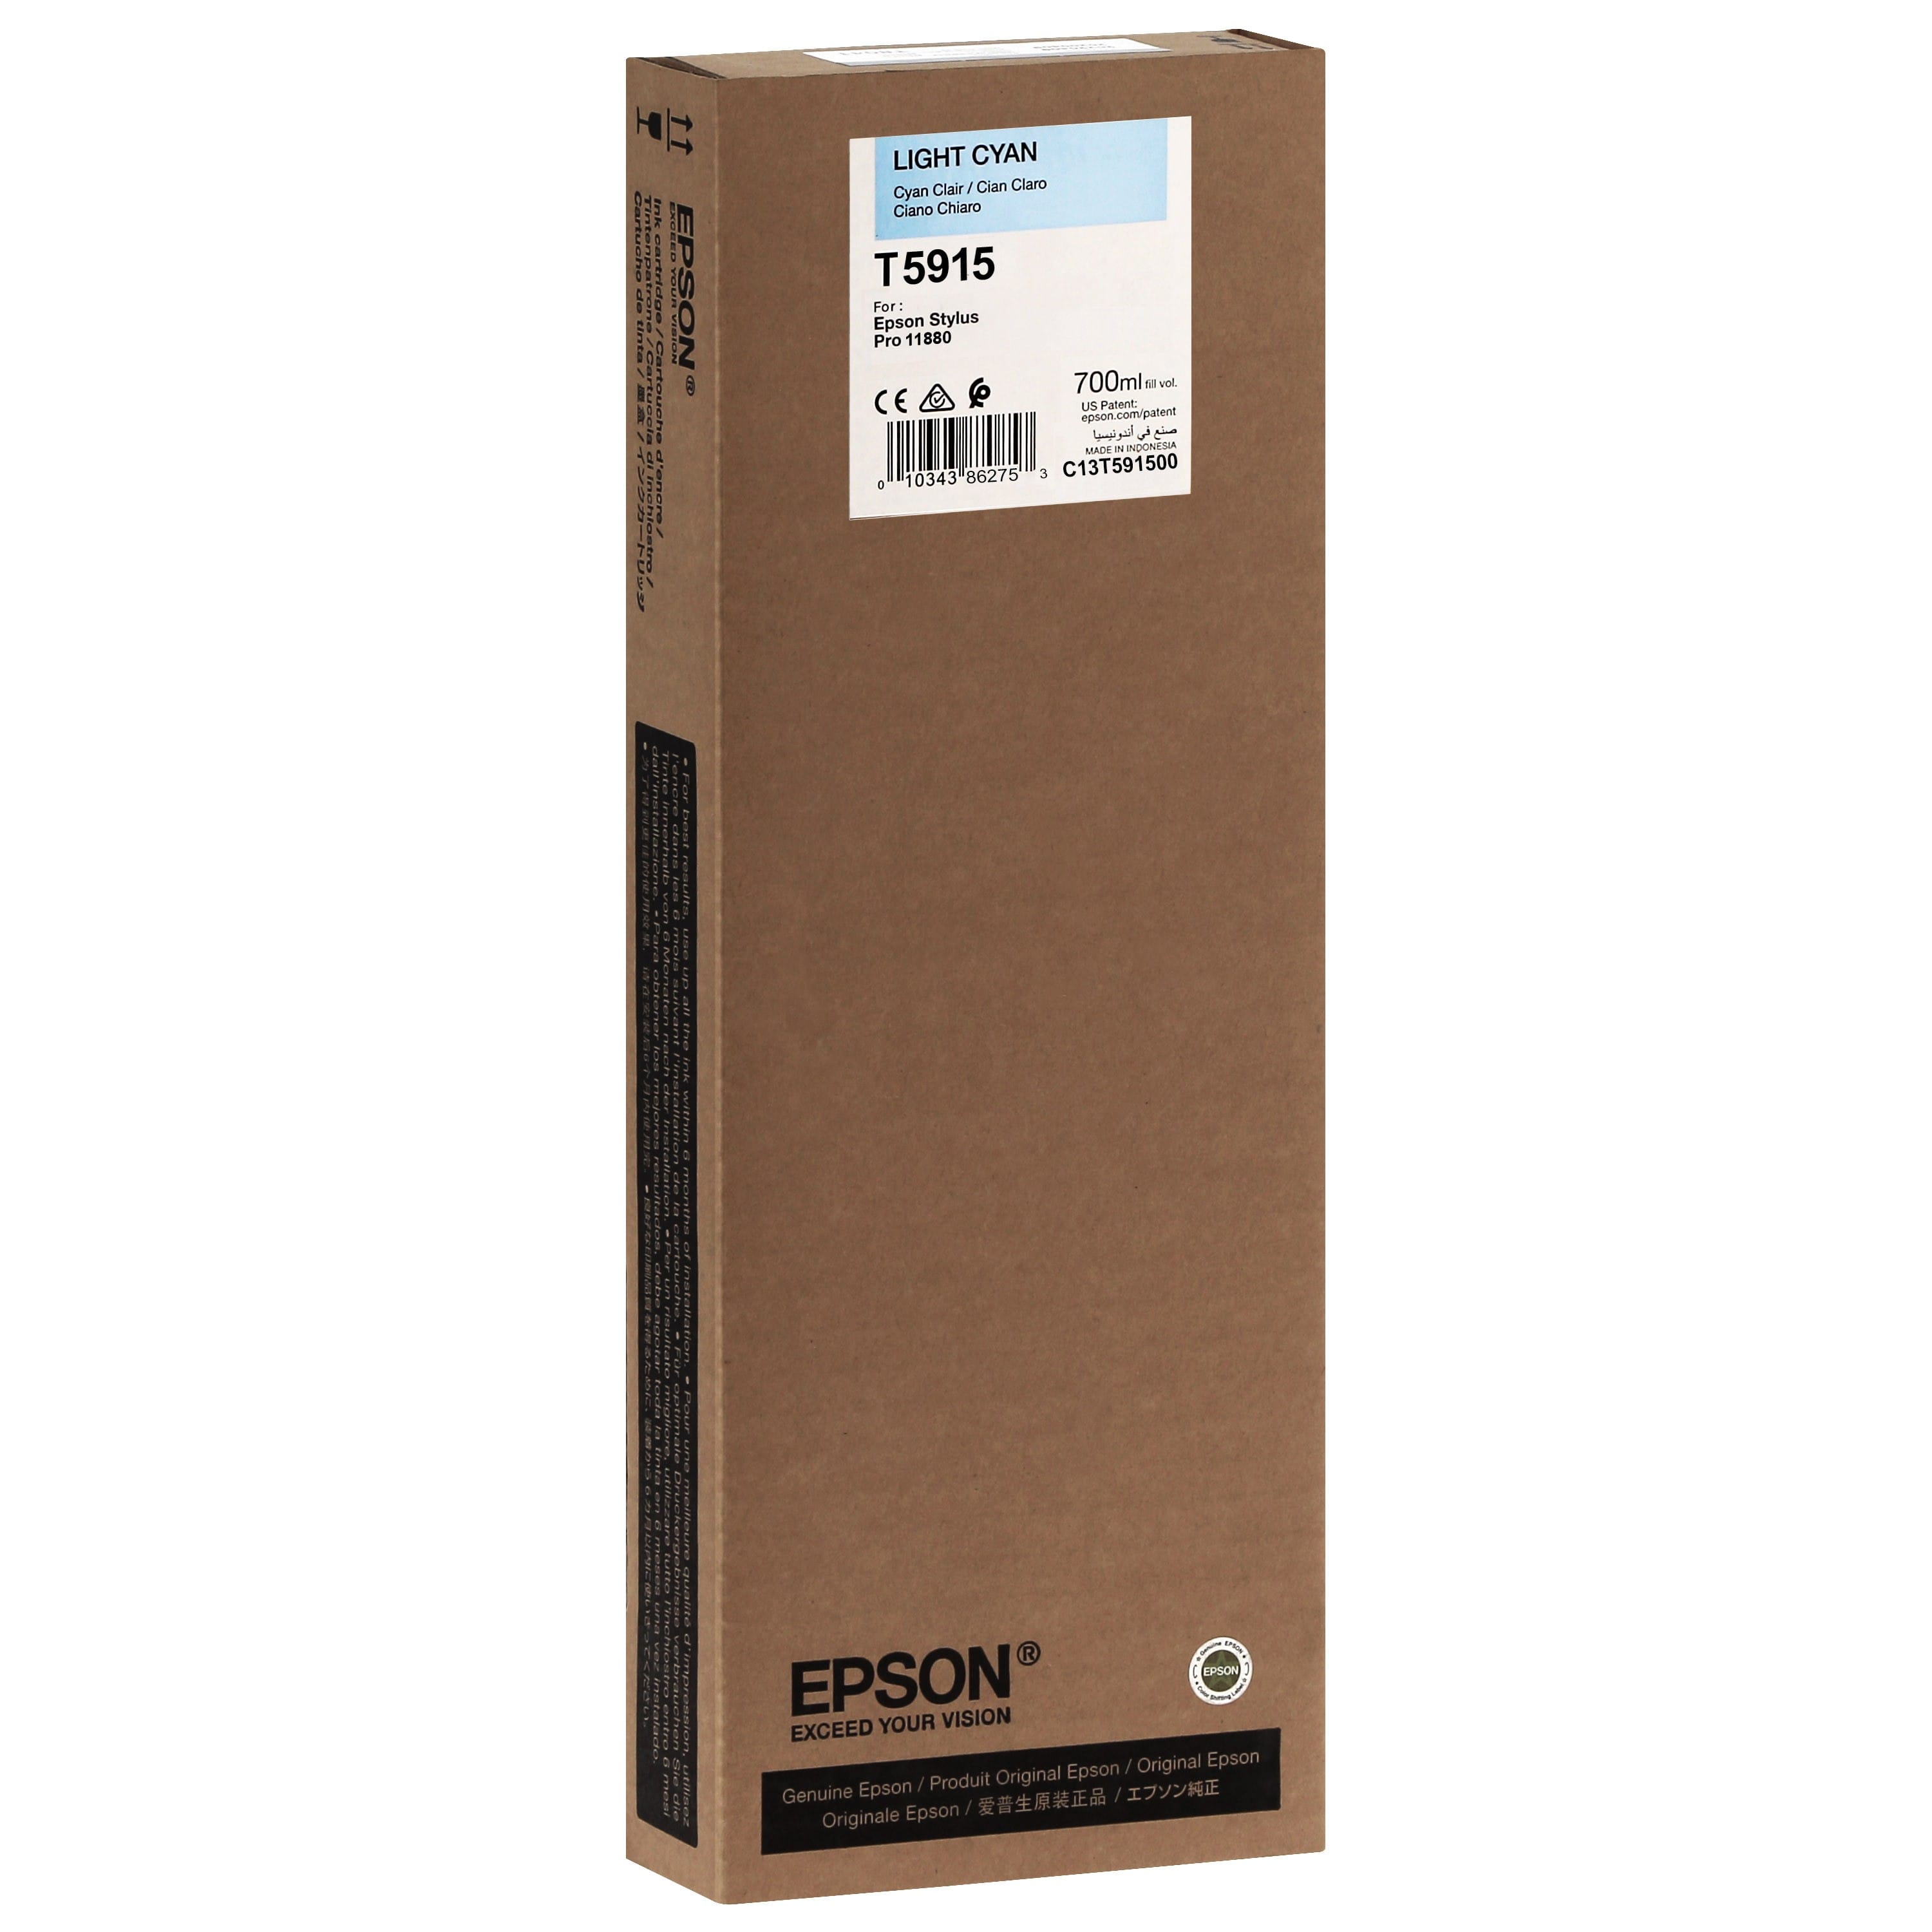 EPSON - Cartouche d'encre traceur T5915 Pour imprimante 11880 Cyan clair - 700ml